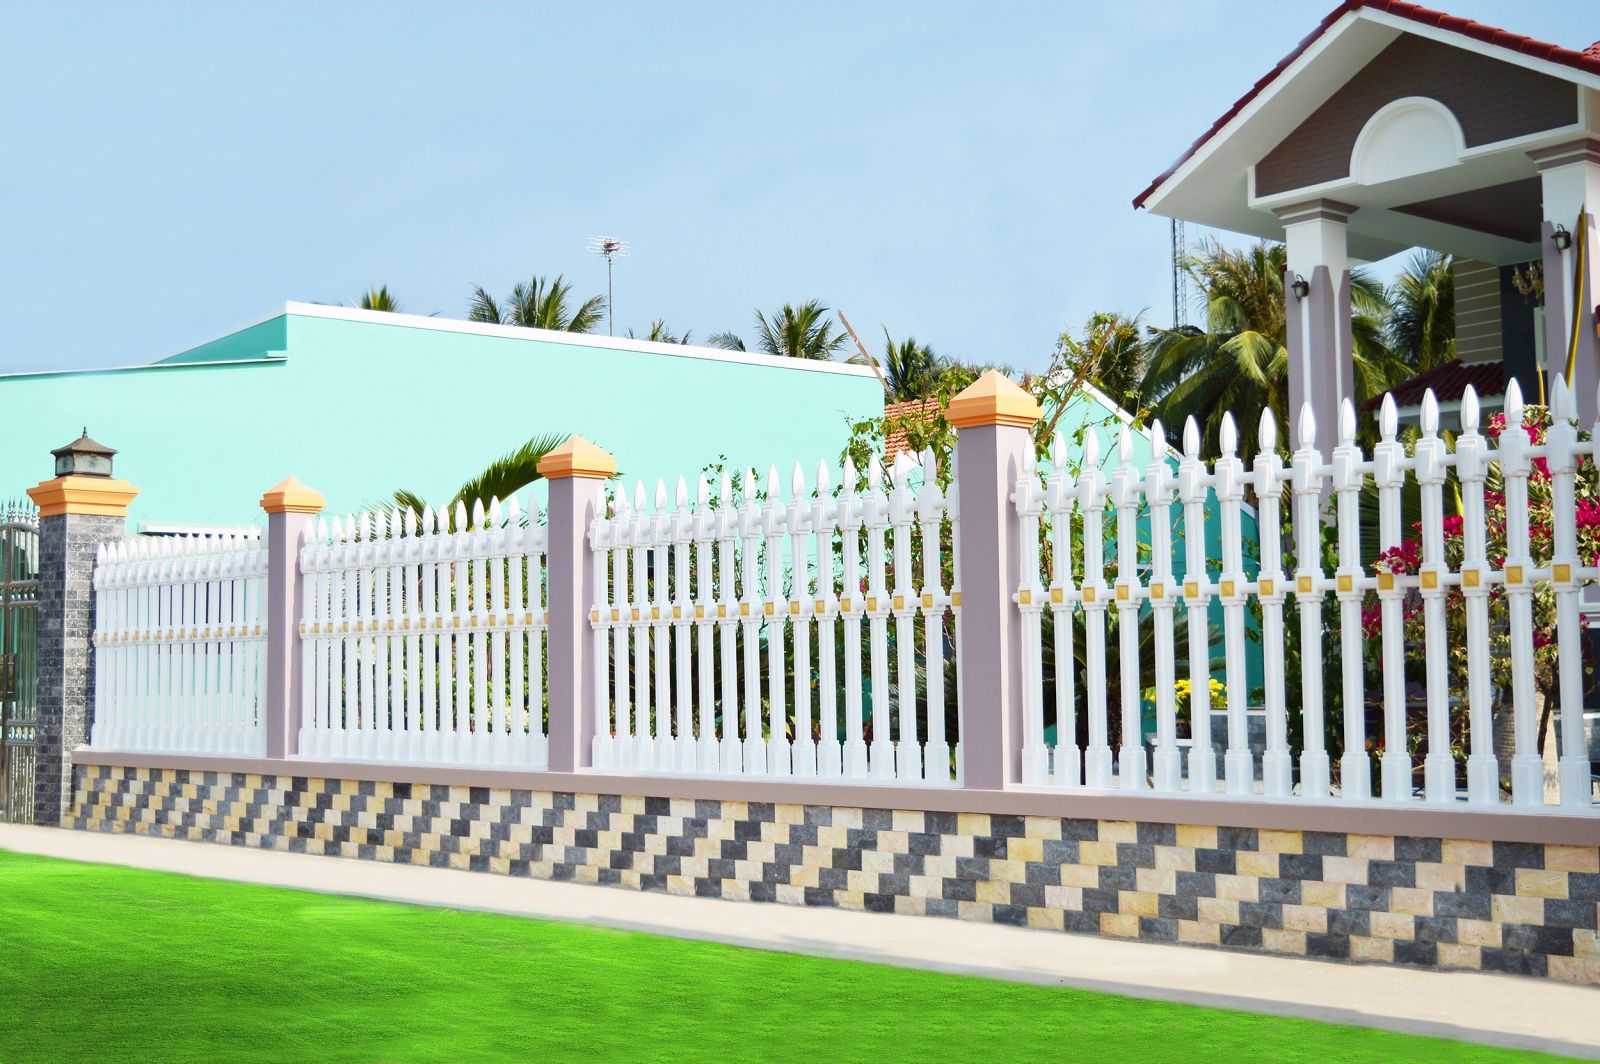 Thiết kế hàng rào ngôi nhà cần chú ý kích thước như thế nào?